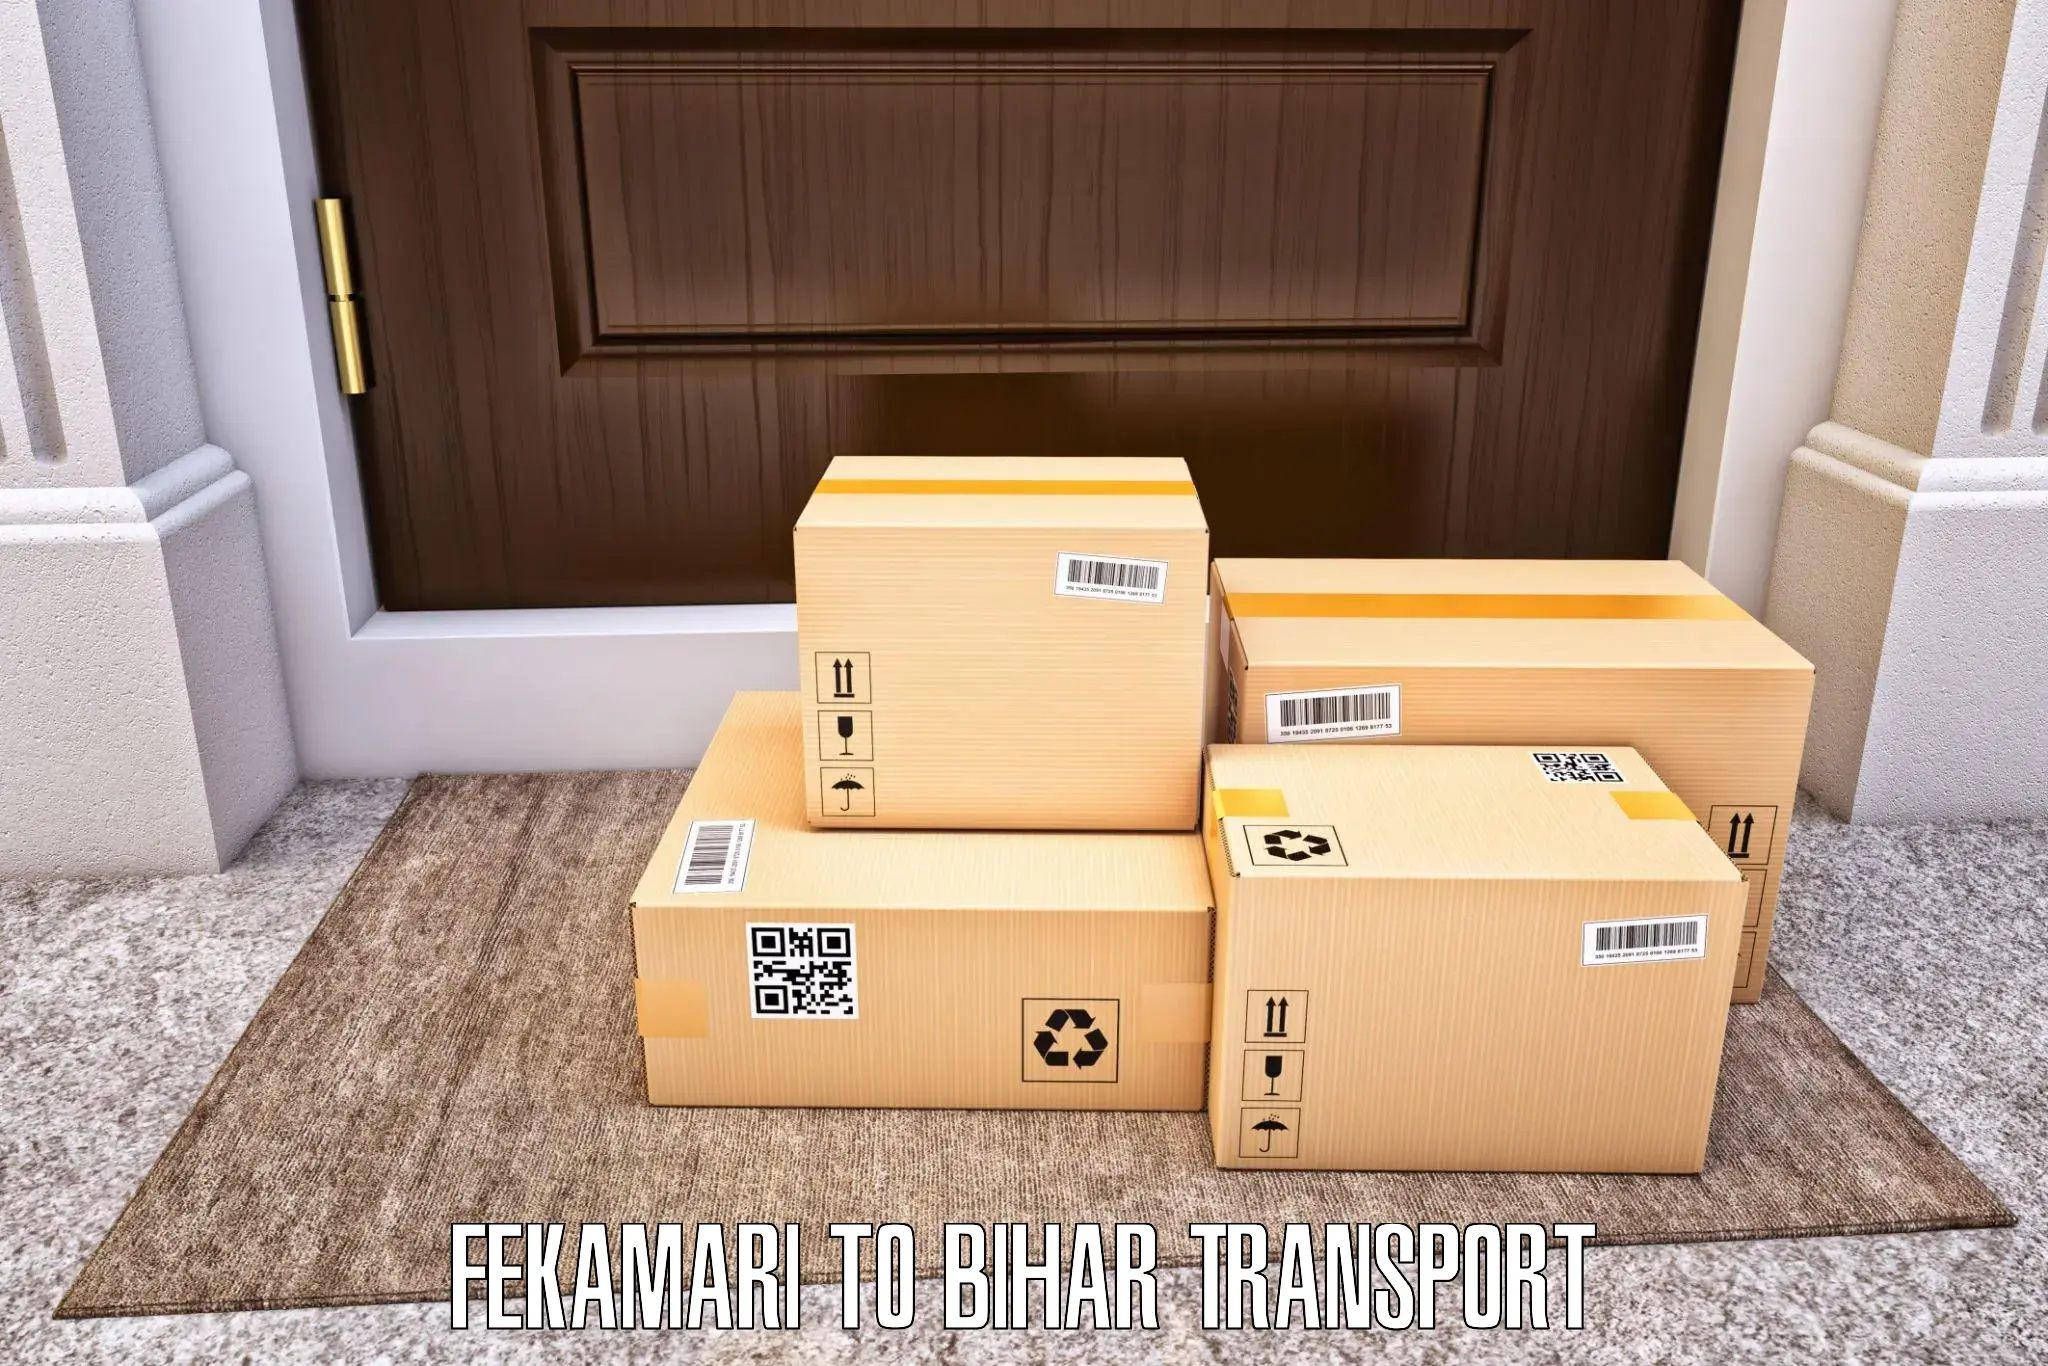 Furniture transport service Fekamari to Malyabag